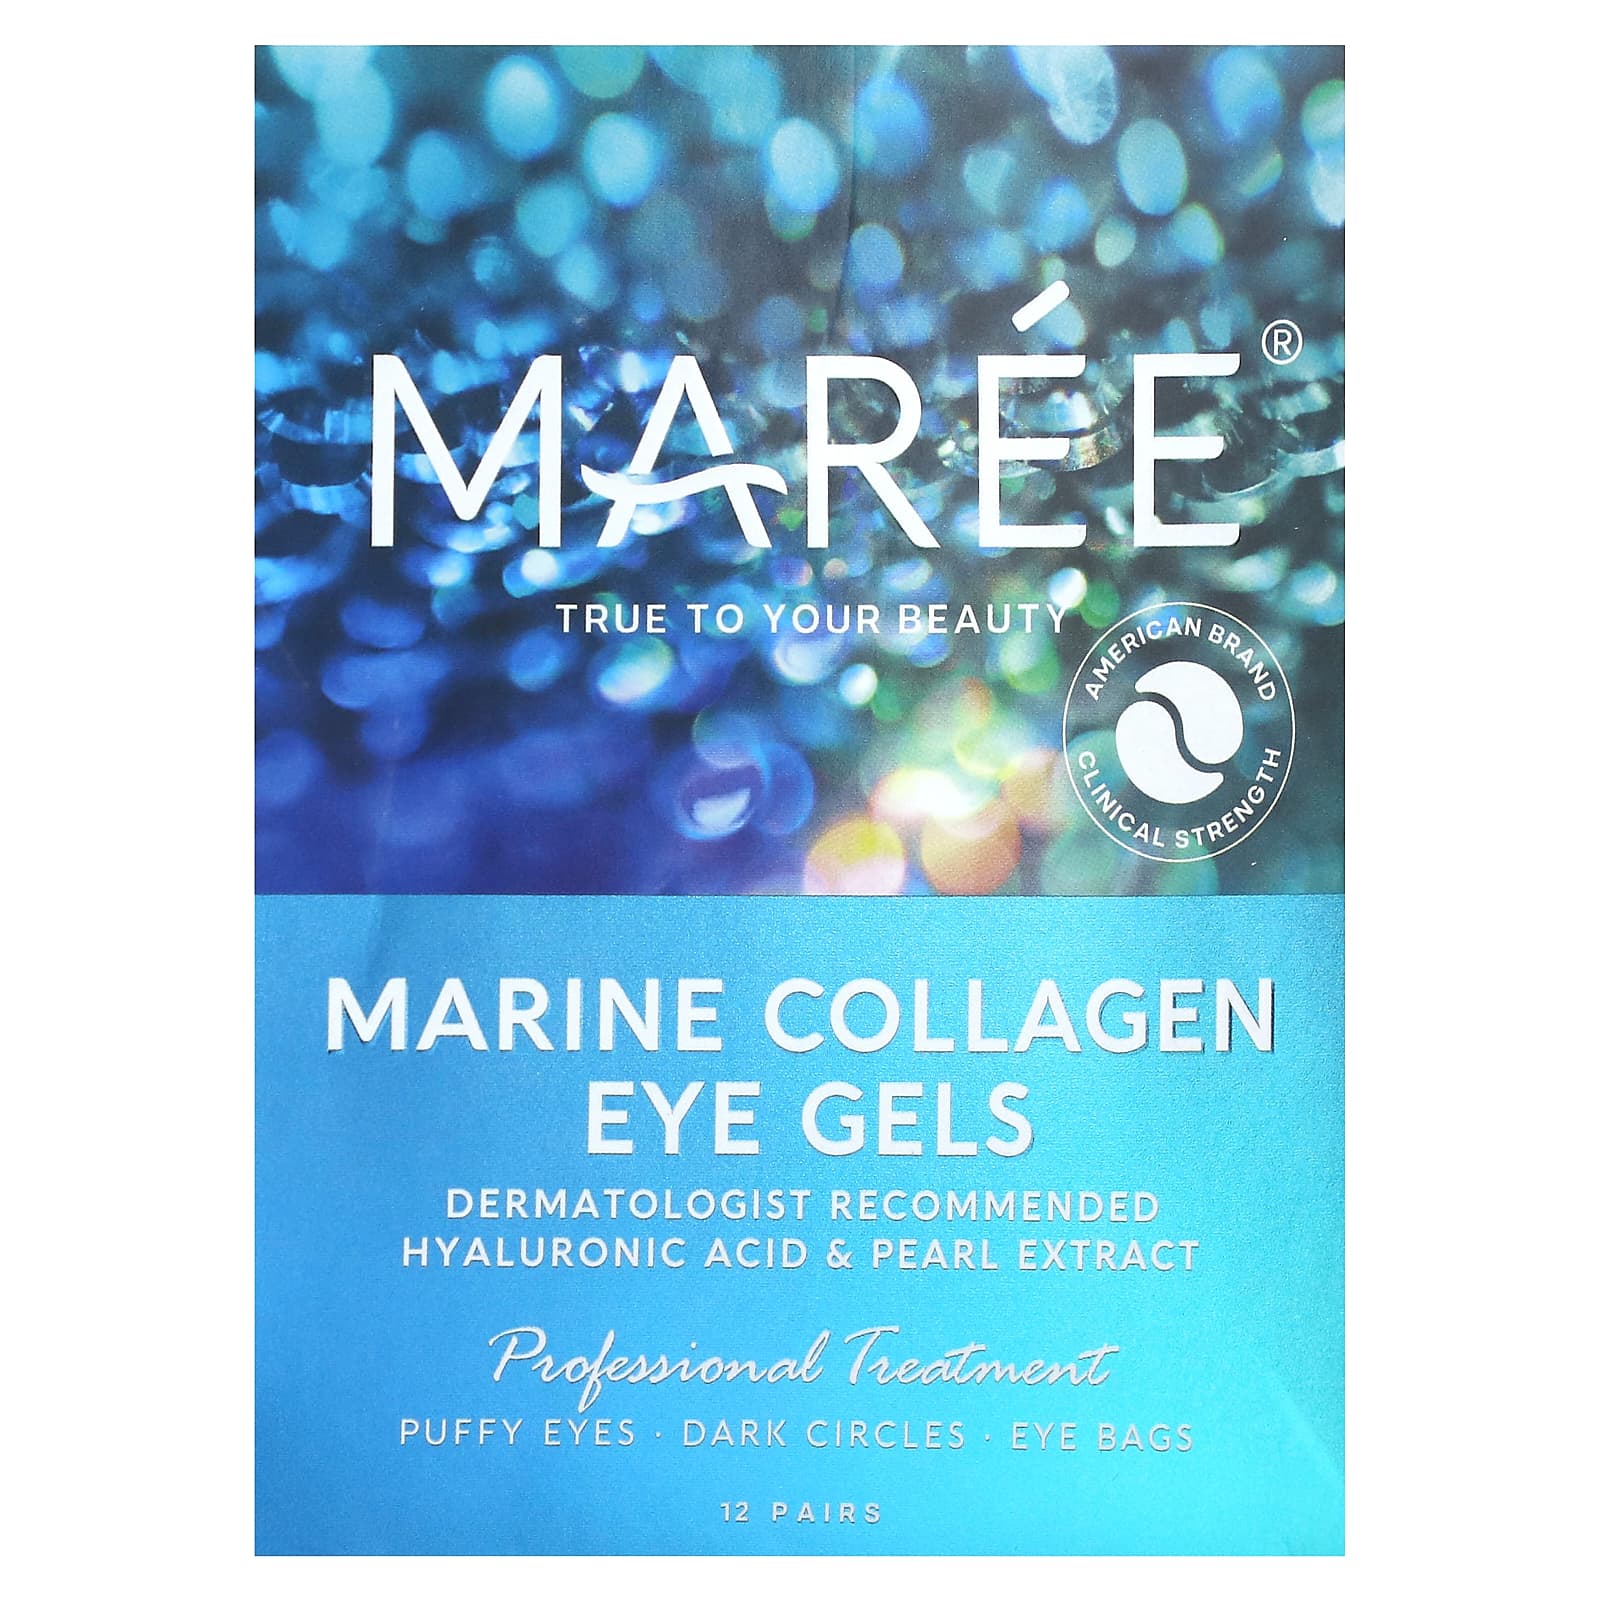 Maree, Marine Collagen Eye Gels, 12 Pairs, 1.32 oz (36 g)